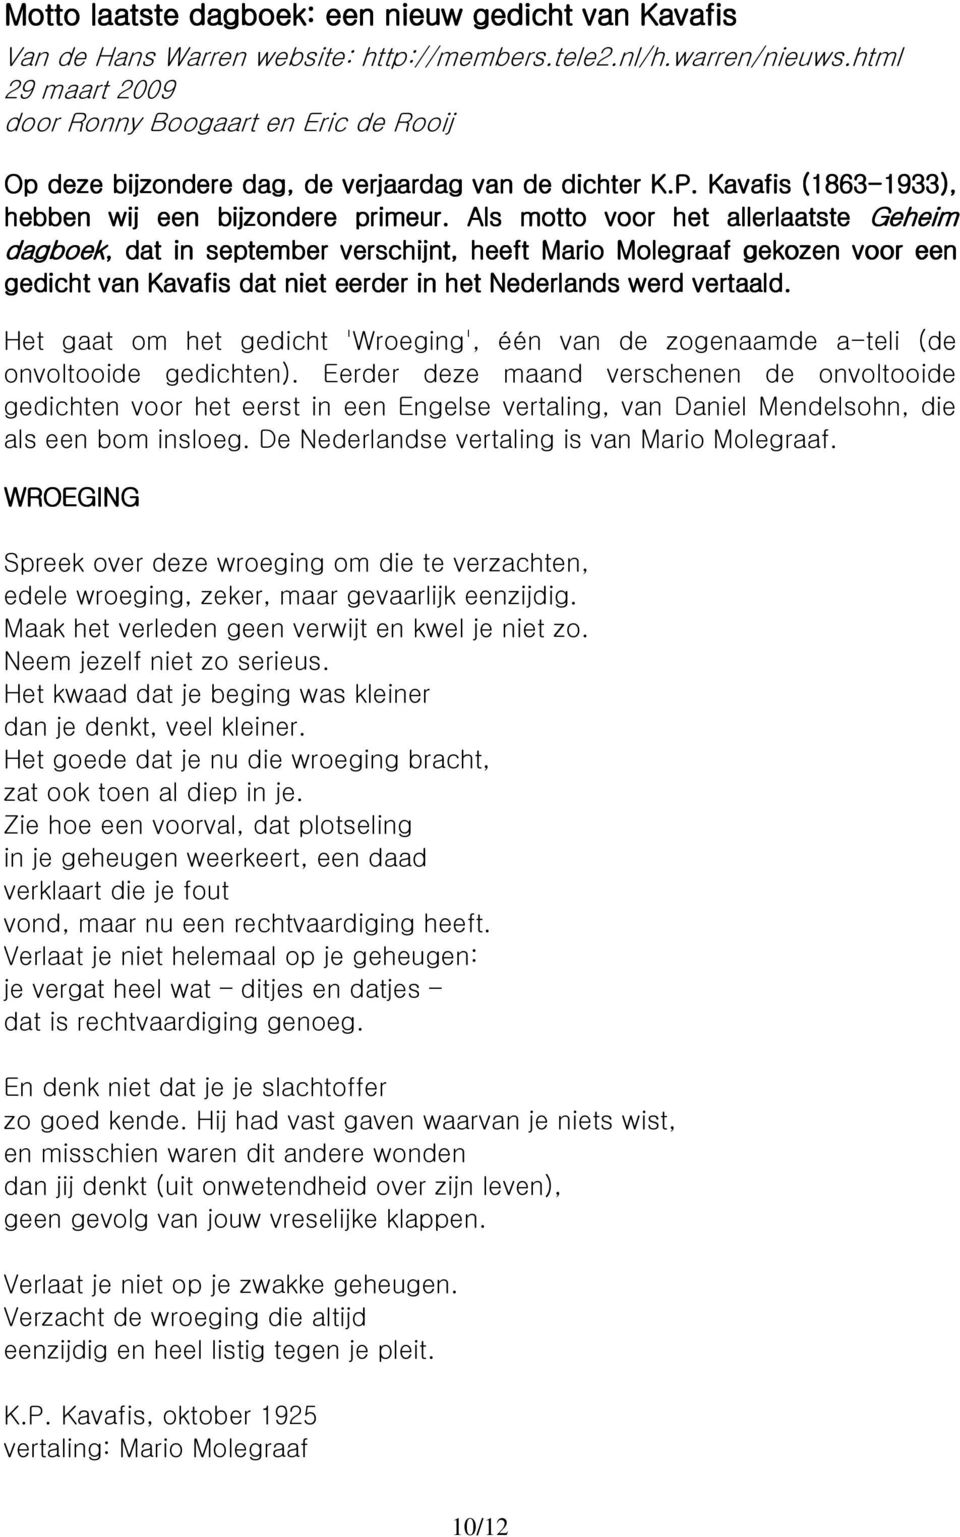 Als motto voor het allerlaatste Geheim dagboek,, dat in september r verschijnt, heeft Mario Molegraaf gekozen voor een gedicht van Kavafis dat niet eerder in het Nederlands werd vertaald.